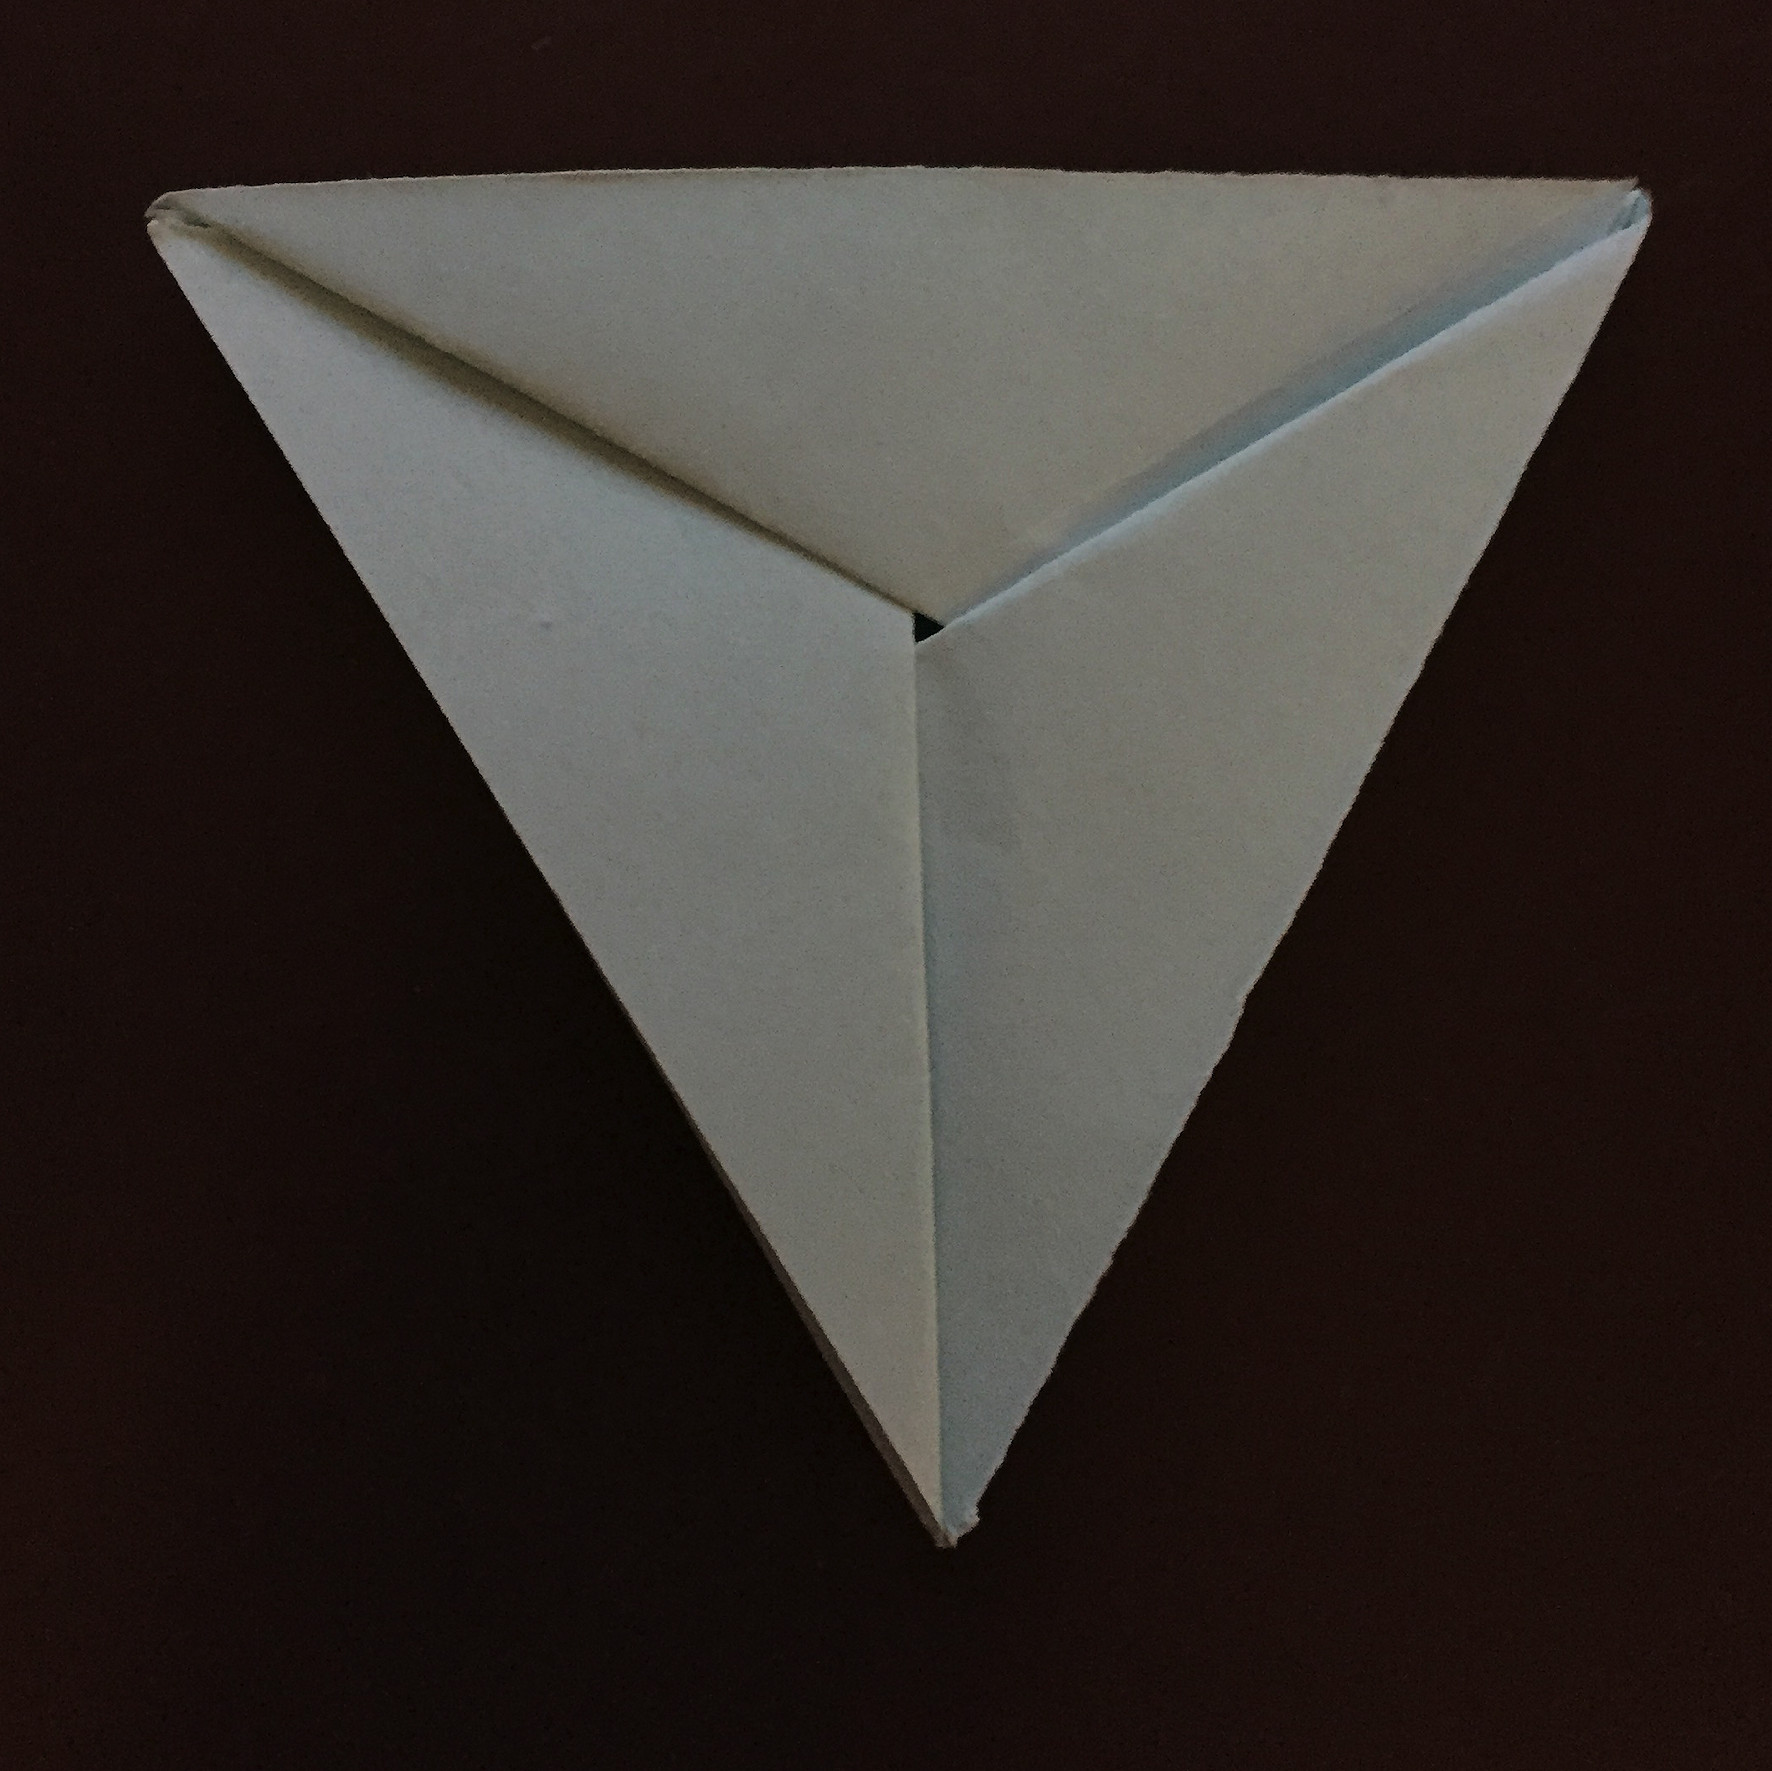 Ein Bild, das Papier, Papierkunst, Origami, Papierprodukt enthält.

Automatisch generierte Beschreibung